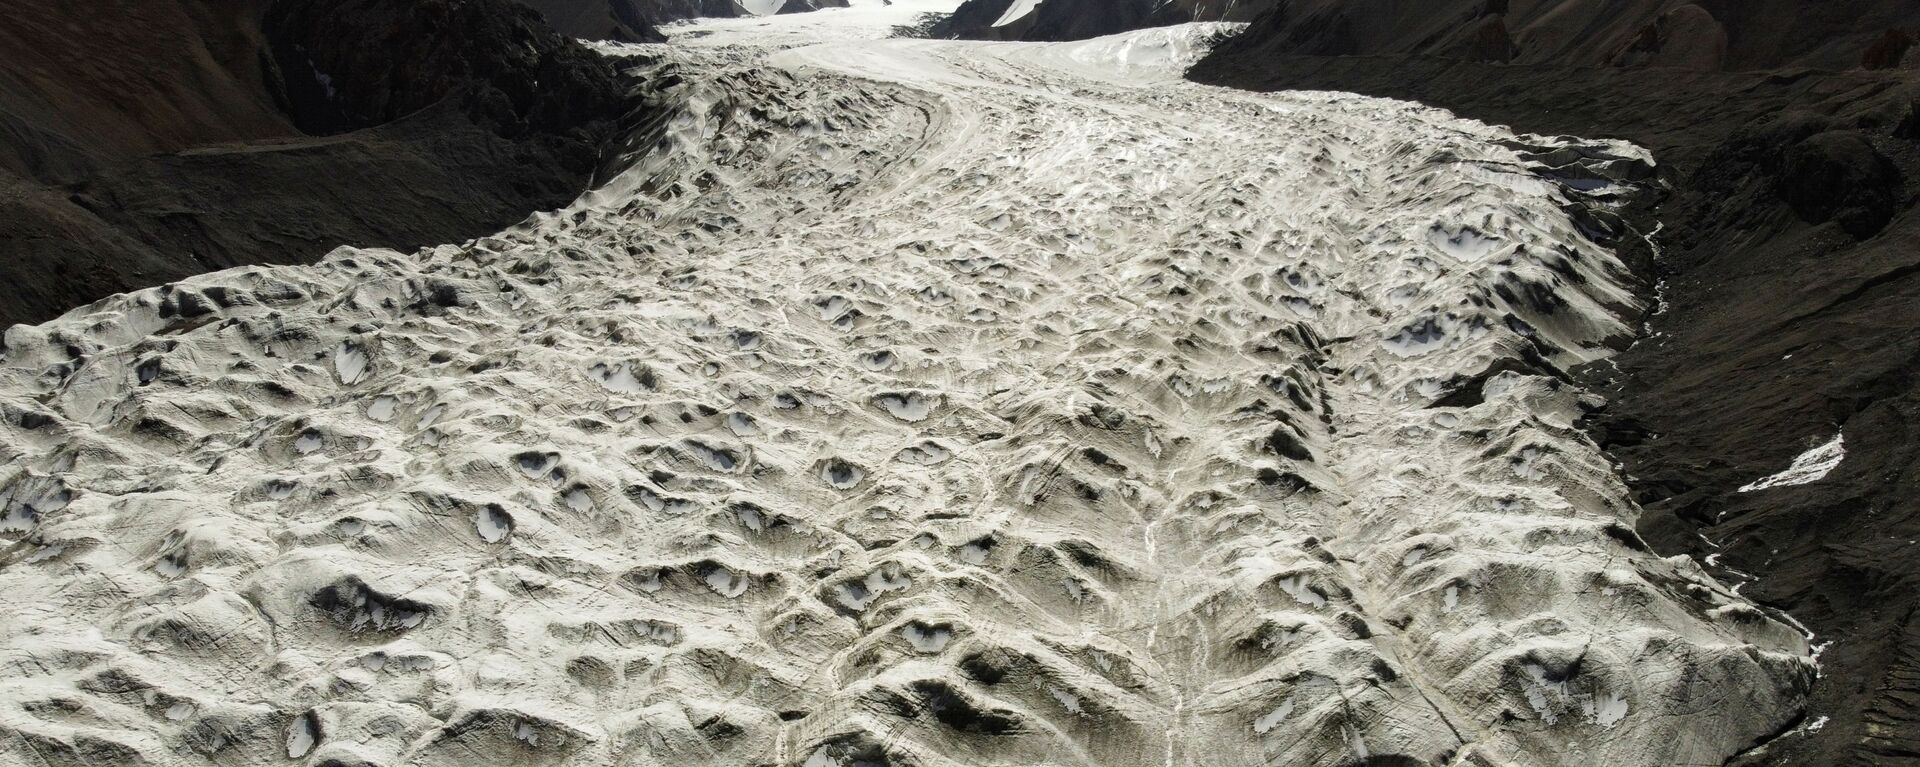 Потоки талой воды с ледника Лаохугоу № 12 в горах Цилянь в провинции Ганьсу, Китай - Sputnik Таджикистан, 1920, 03.03.2021